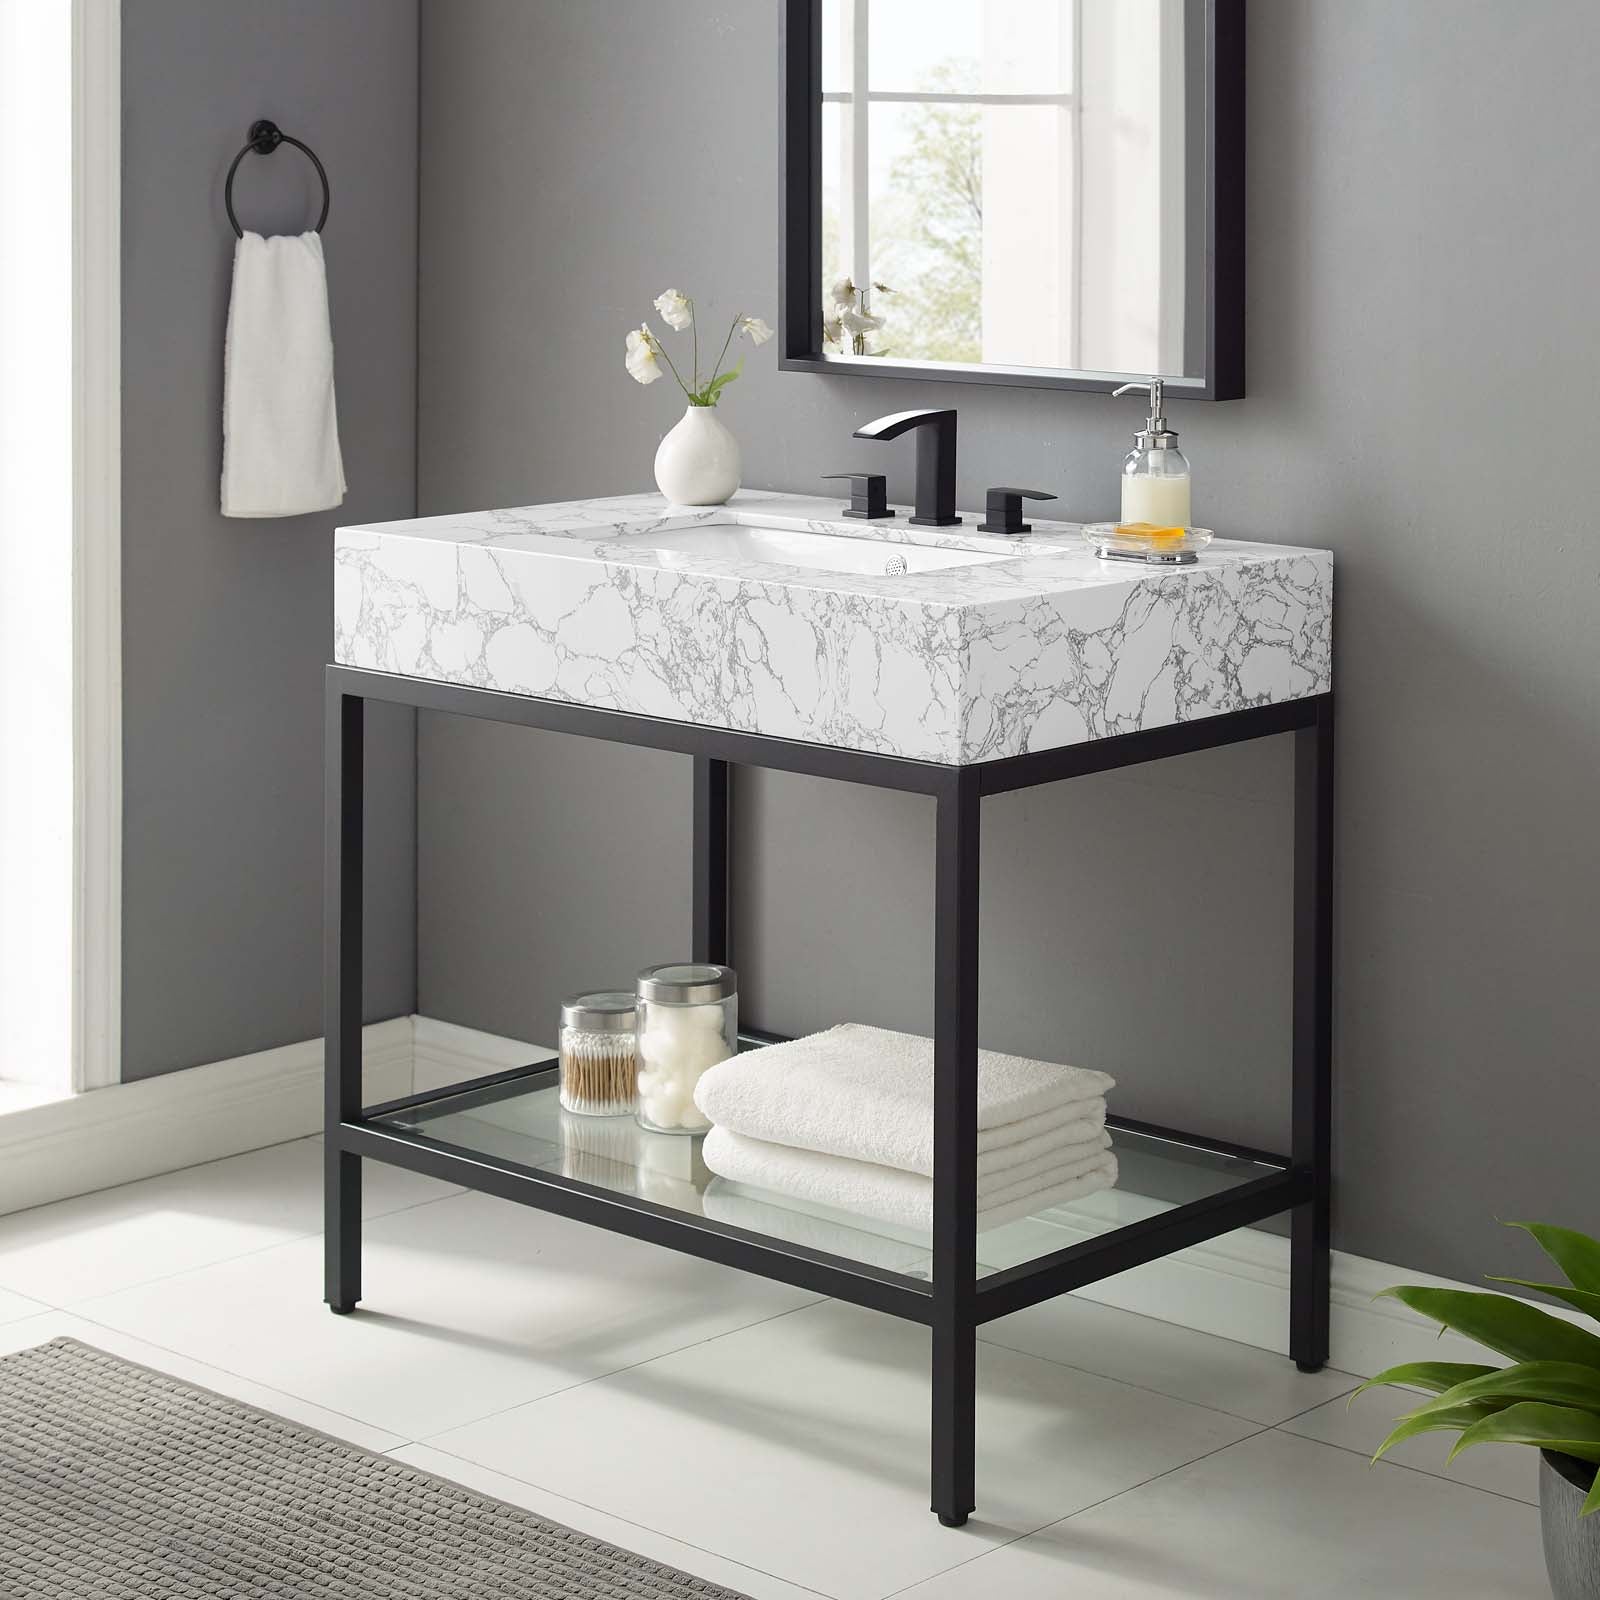 Kingsley 36" Black Stainless Steel Bathroom Vanity-Bathroom Vanity-Modway-Wall2Wall Furnishings